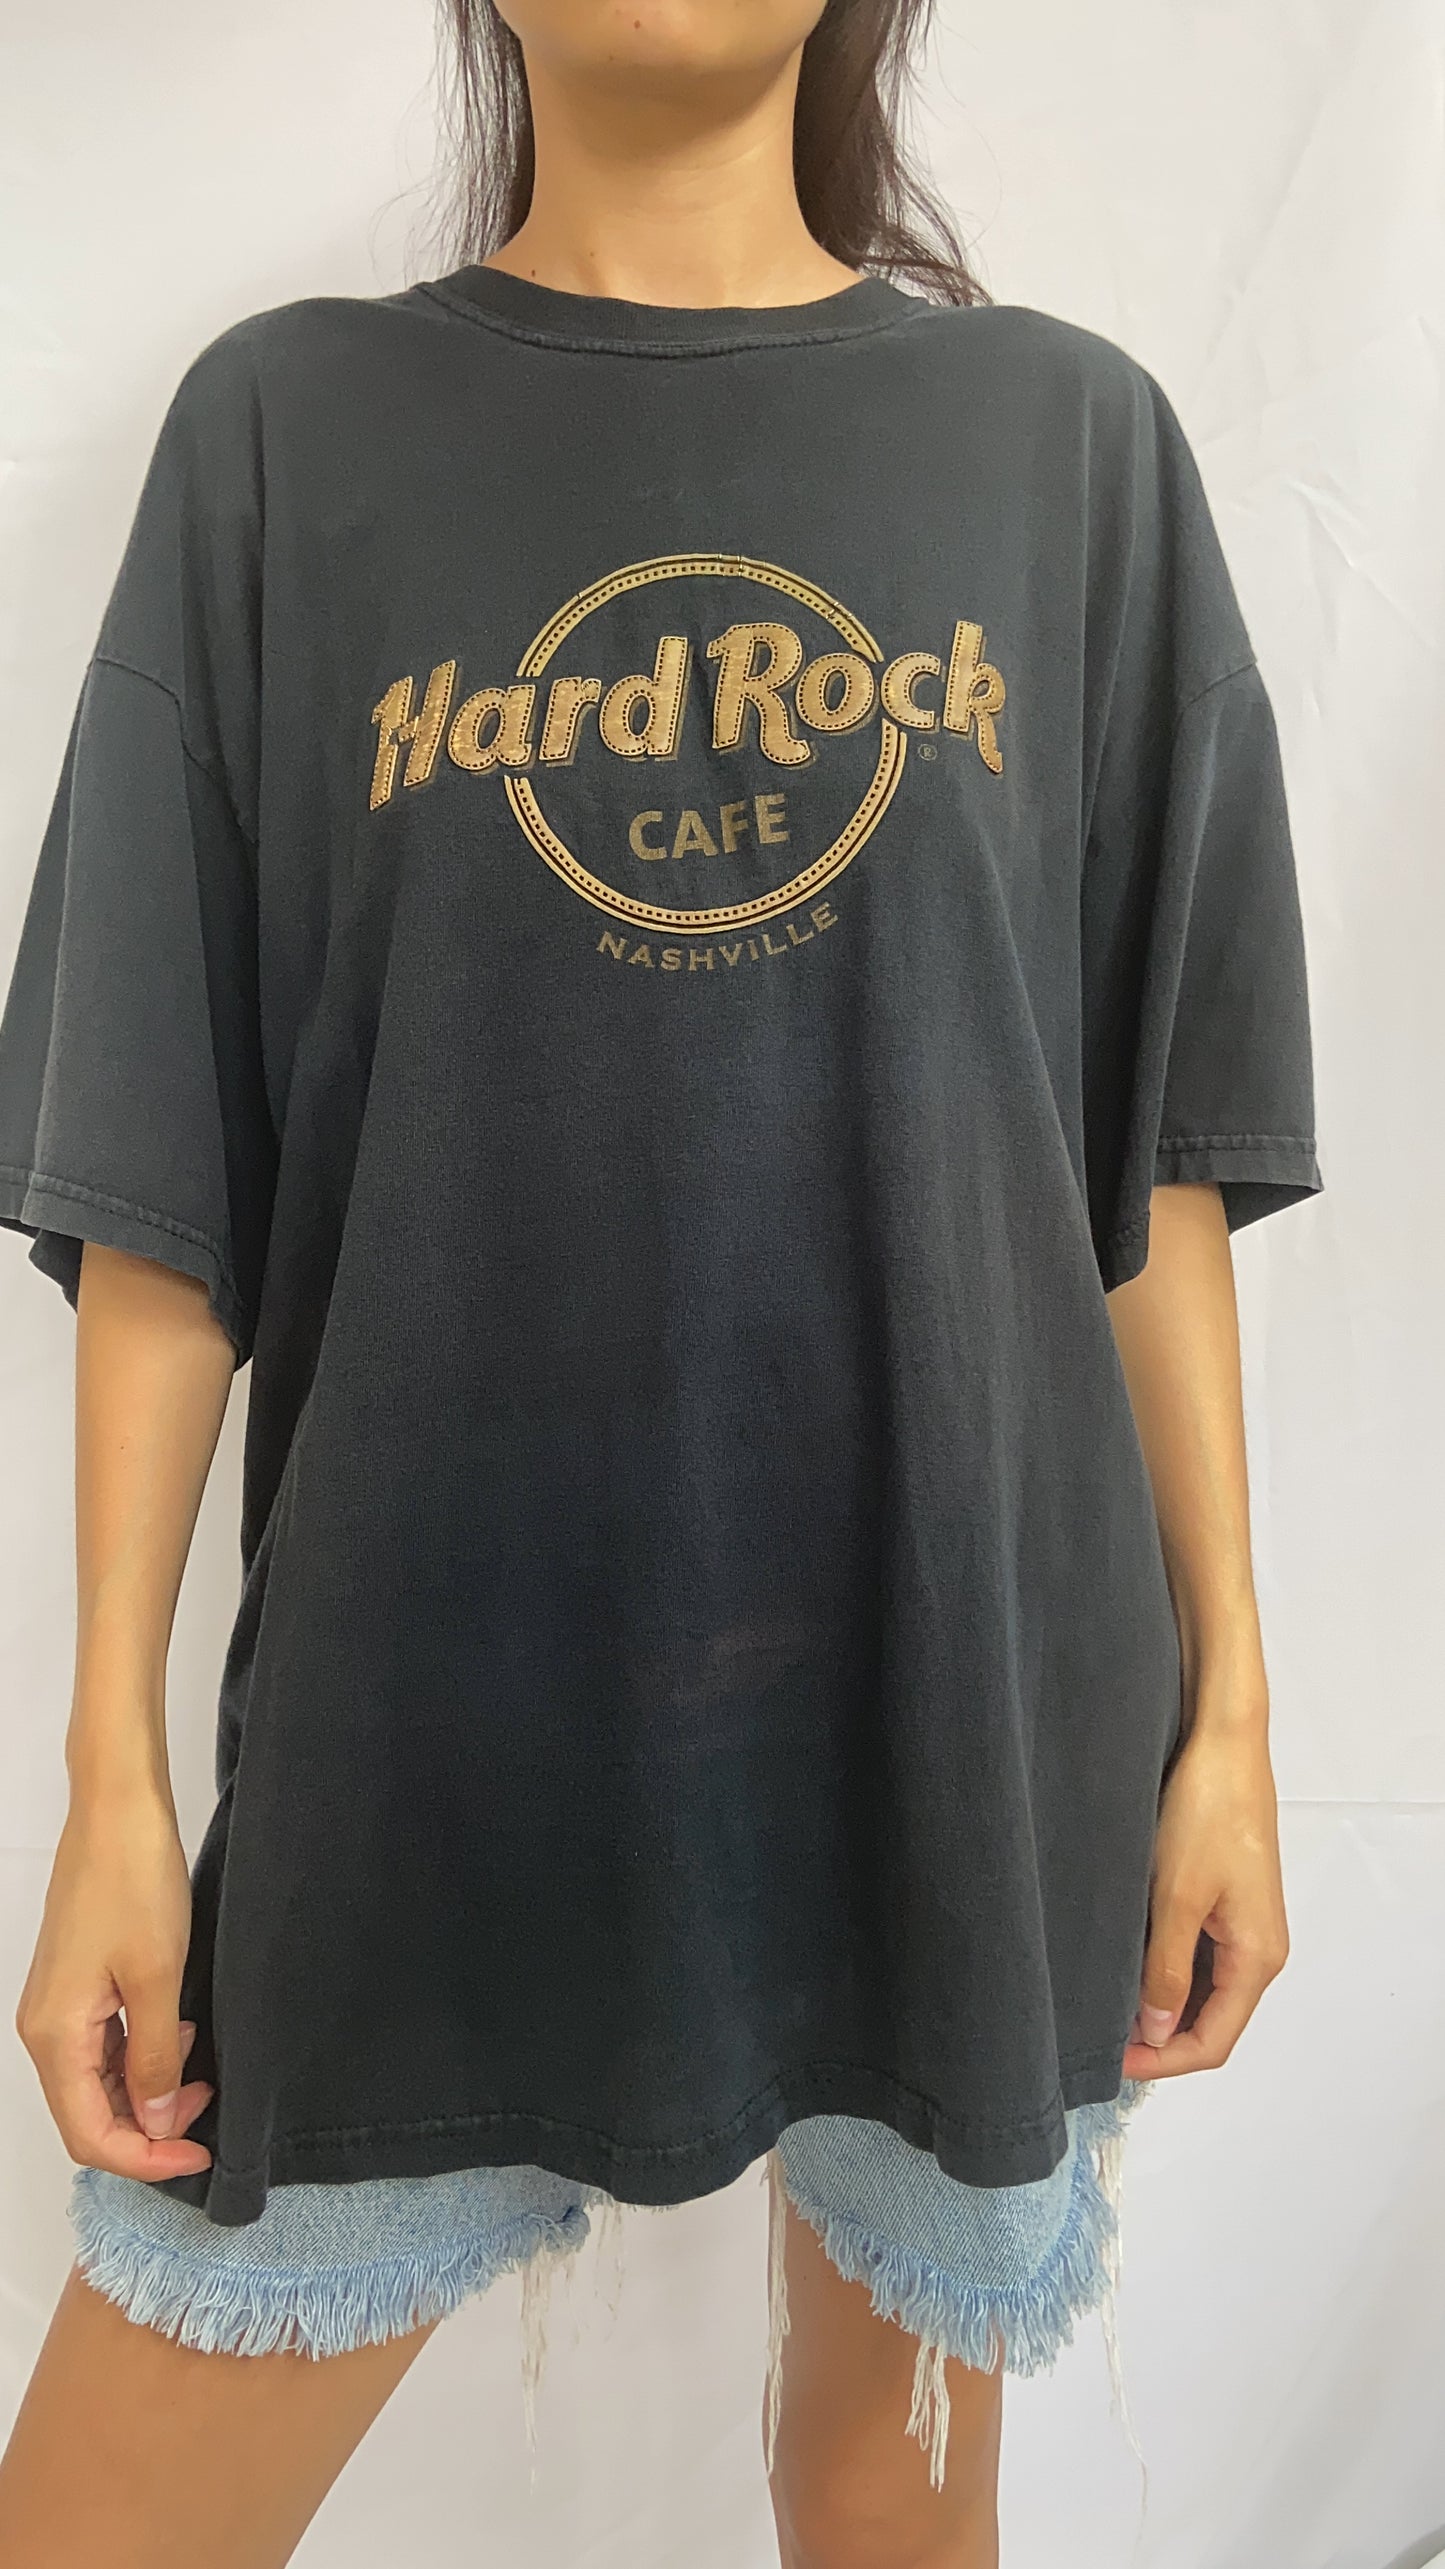 Black Nashville Hard Rock Cafe Tee